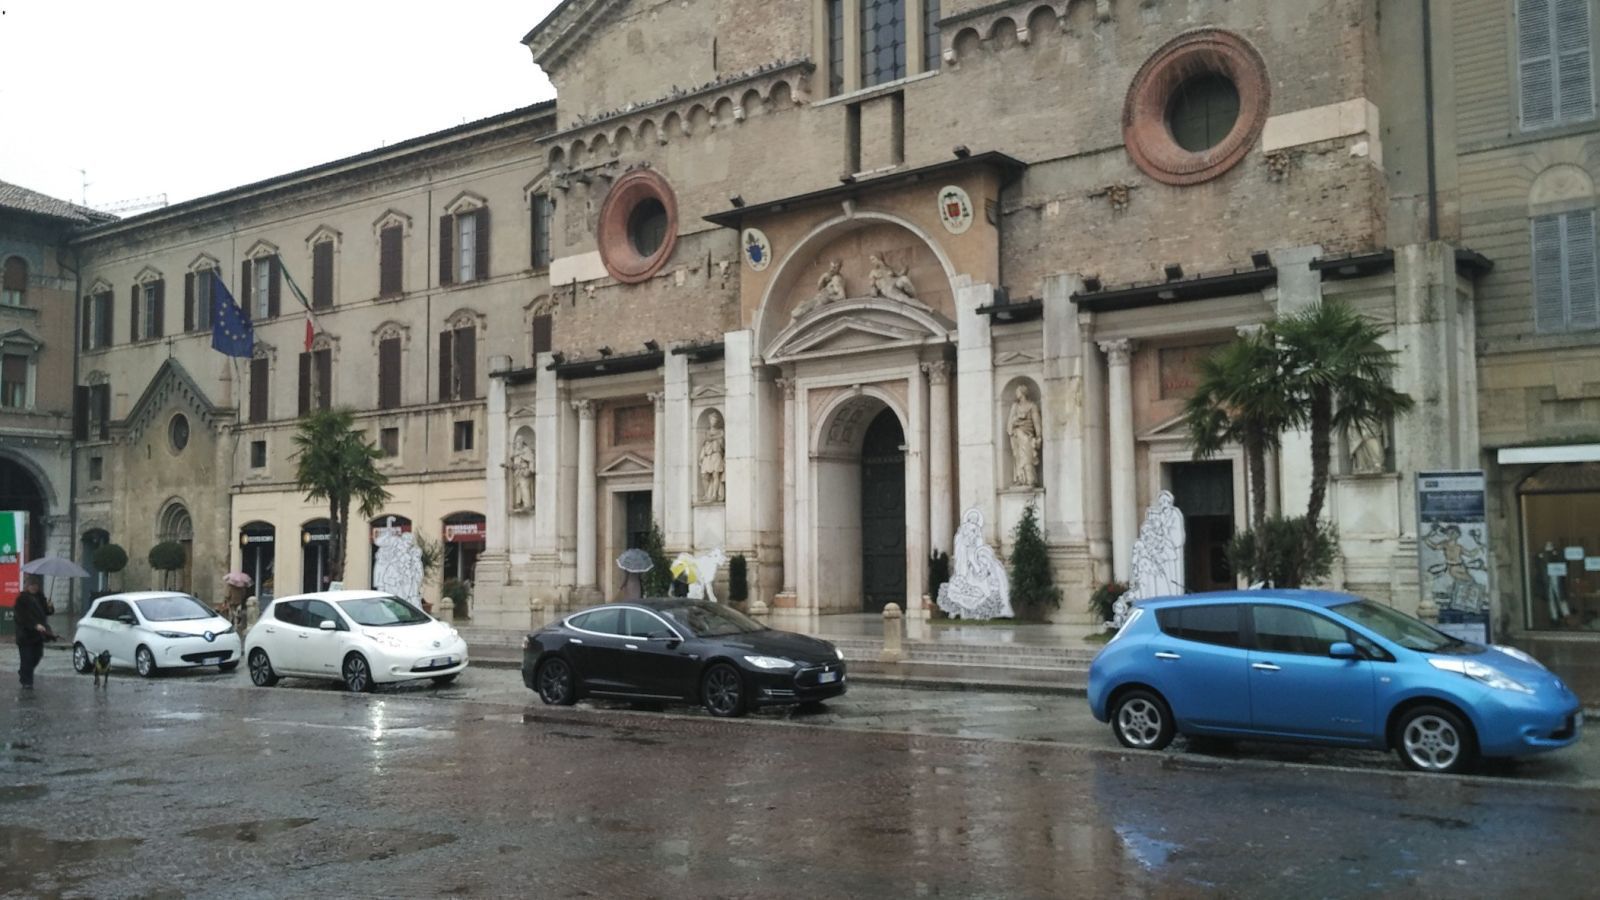 Fermata foto in Piazza Camillo Prampolini, dove il pilomat era aperto perchè era in corso un matrimonio, altrimenti non si entrava.